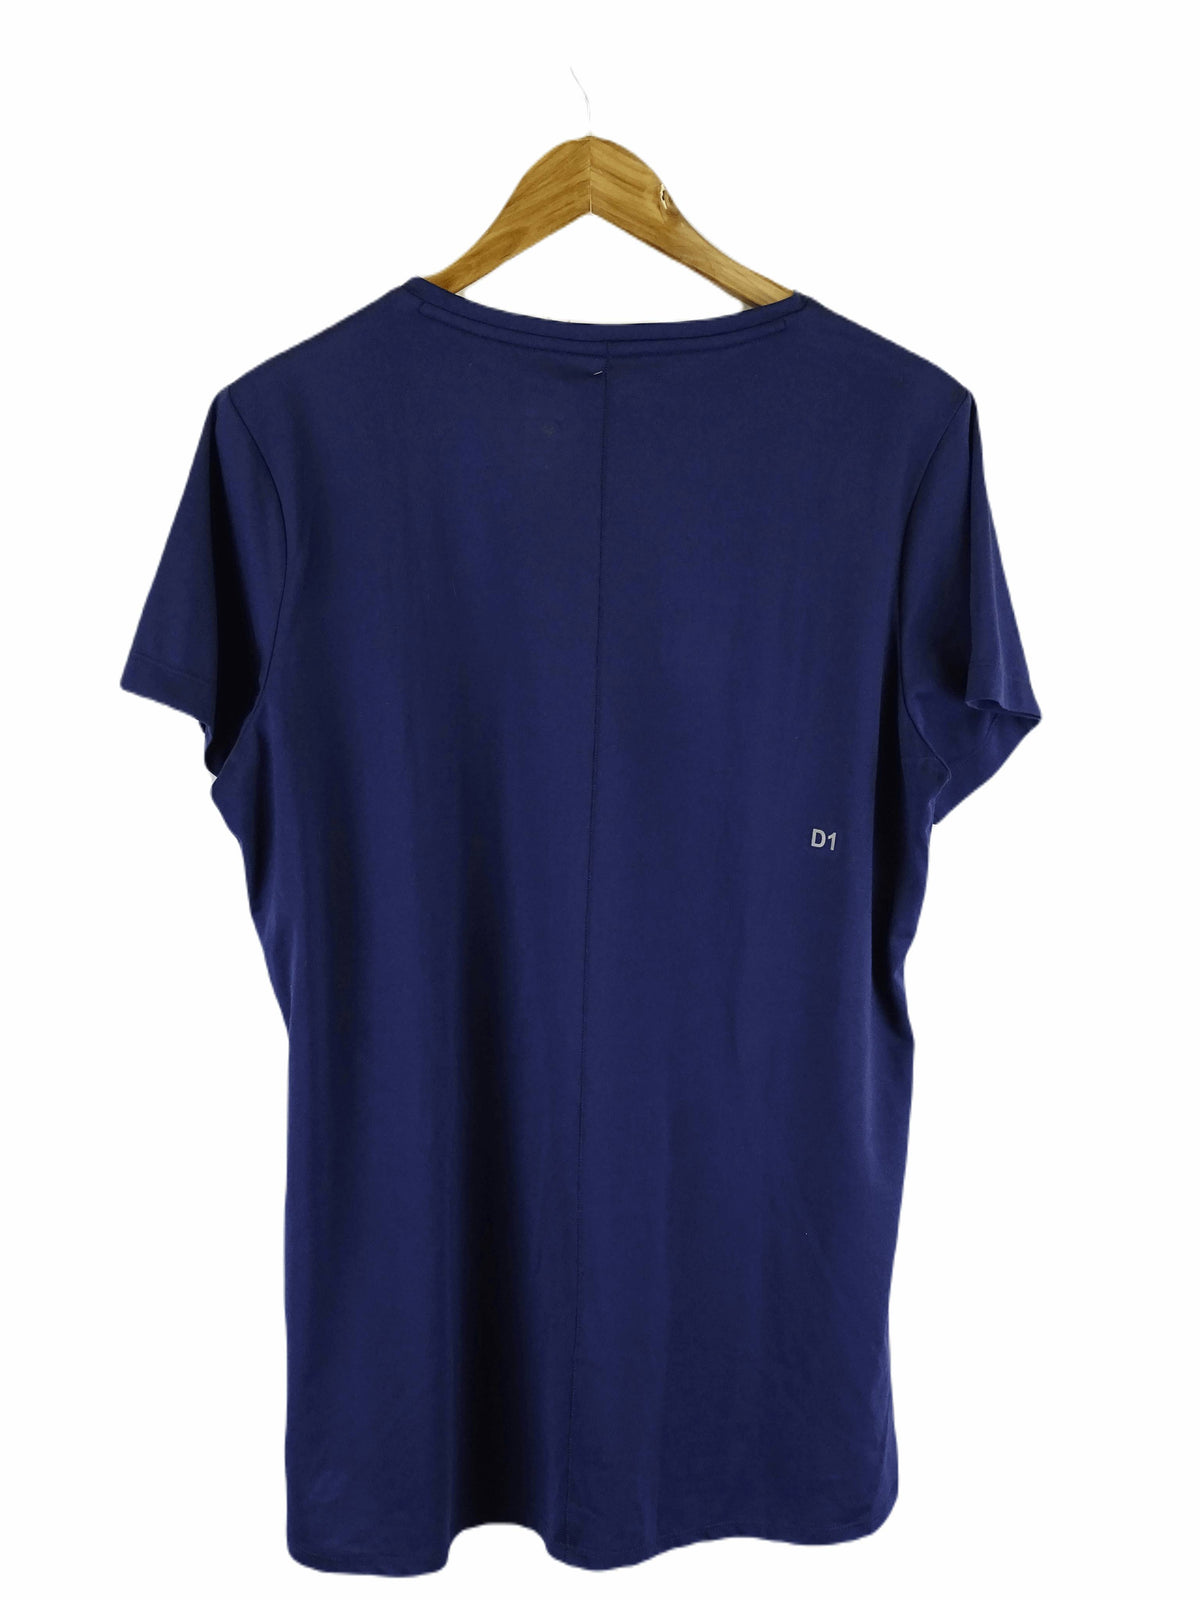 Asics Blue T-shirt XL